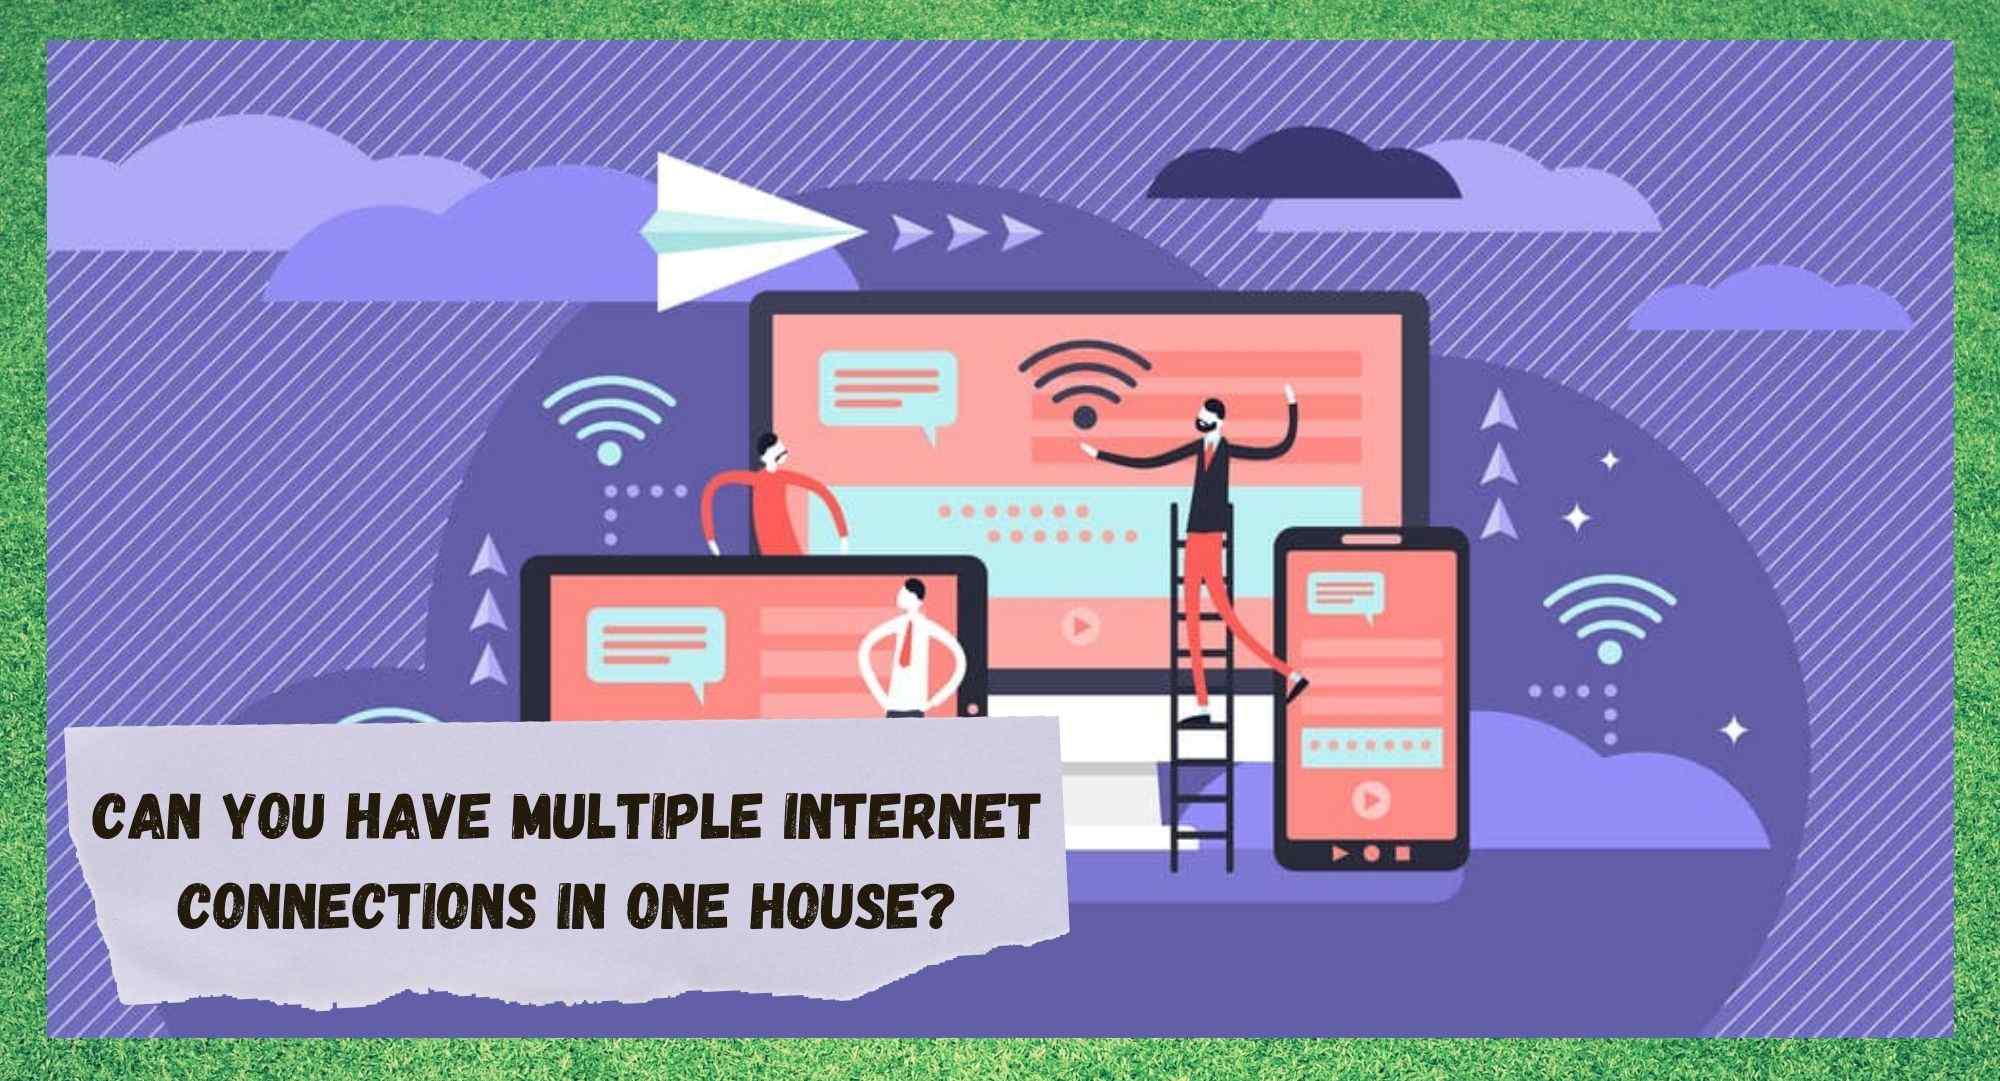 Μπορείτε να έχετε πολλαπλές συνδέσεις Internet σε ένα σπίτι;